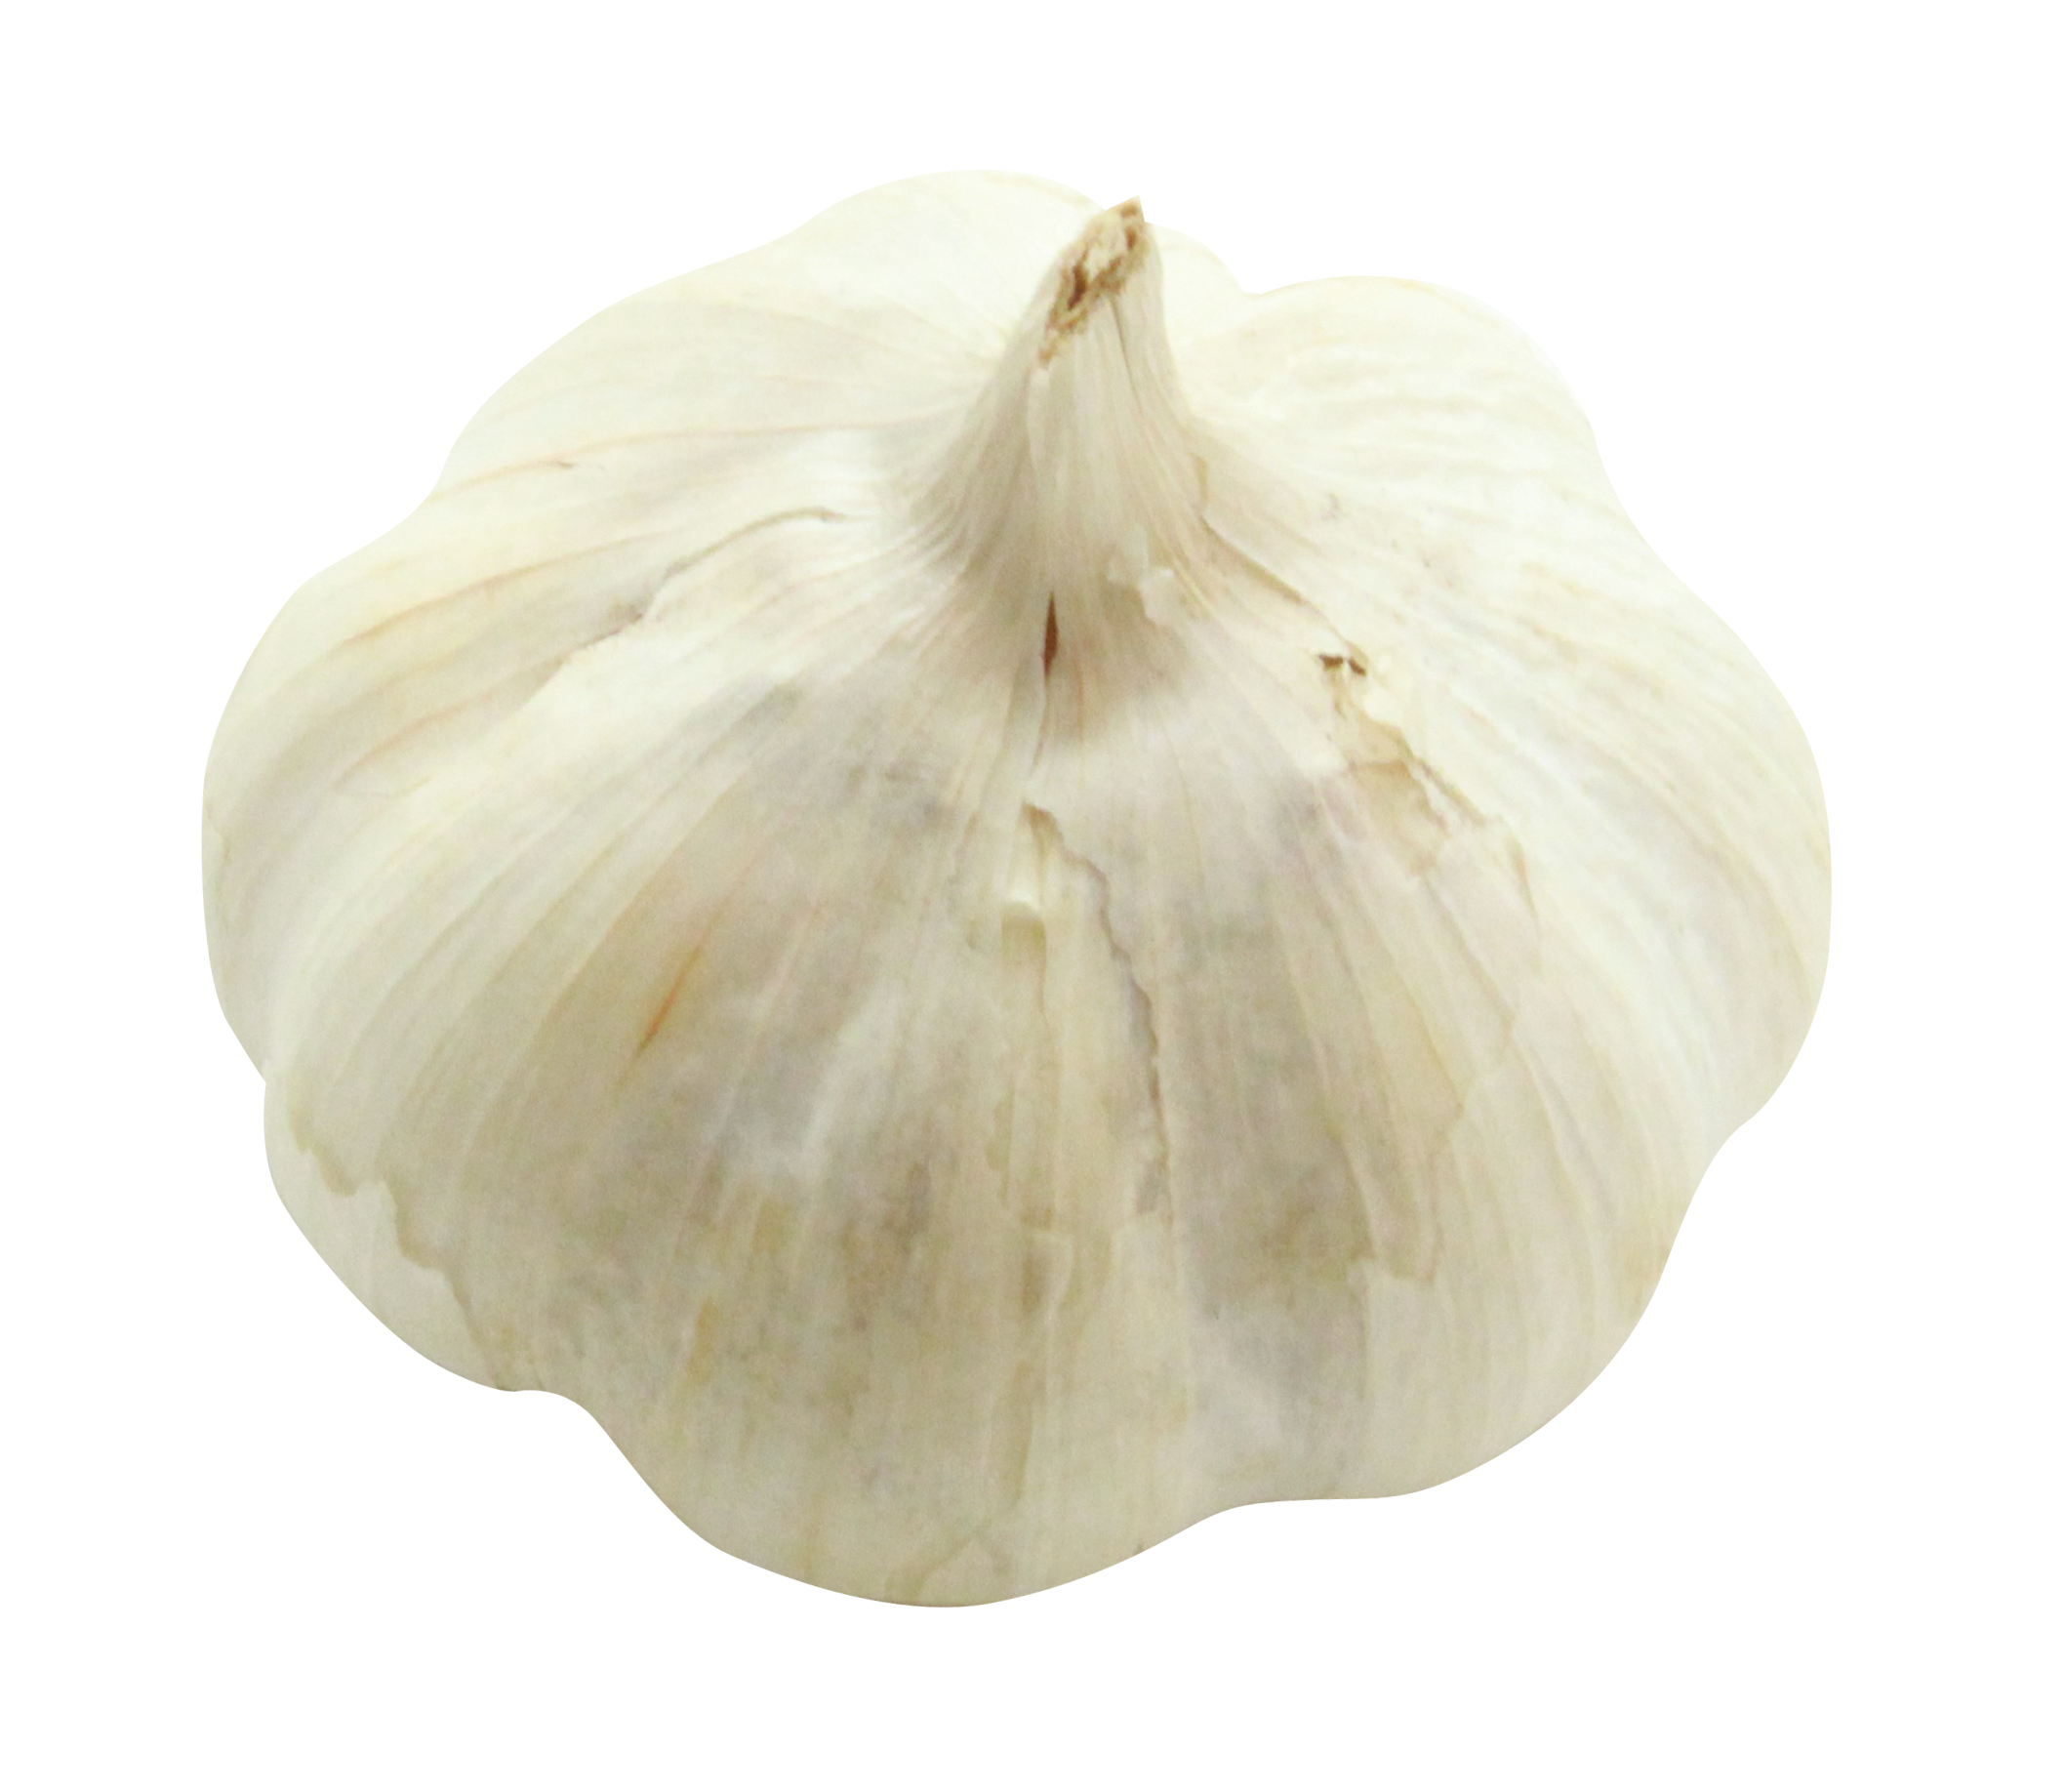 A Close Up Of A Garlic Bulb